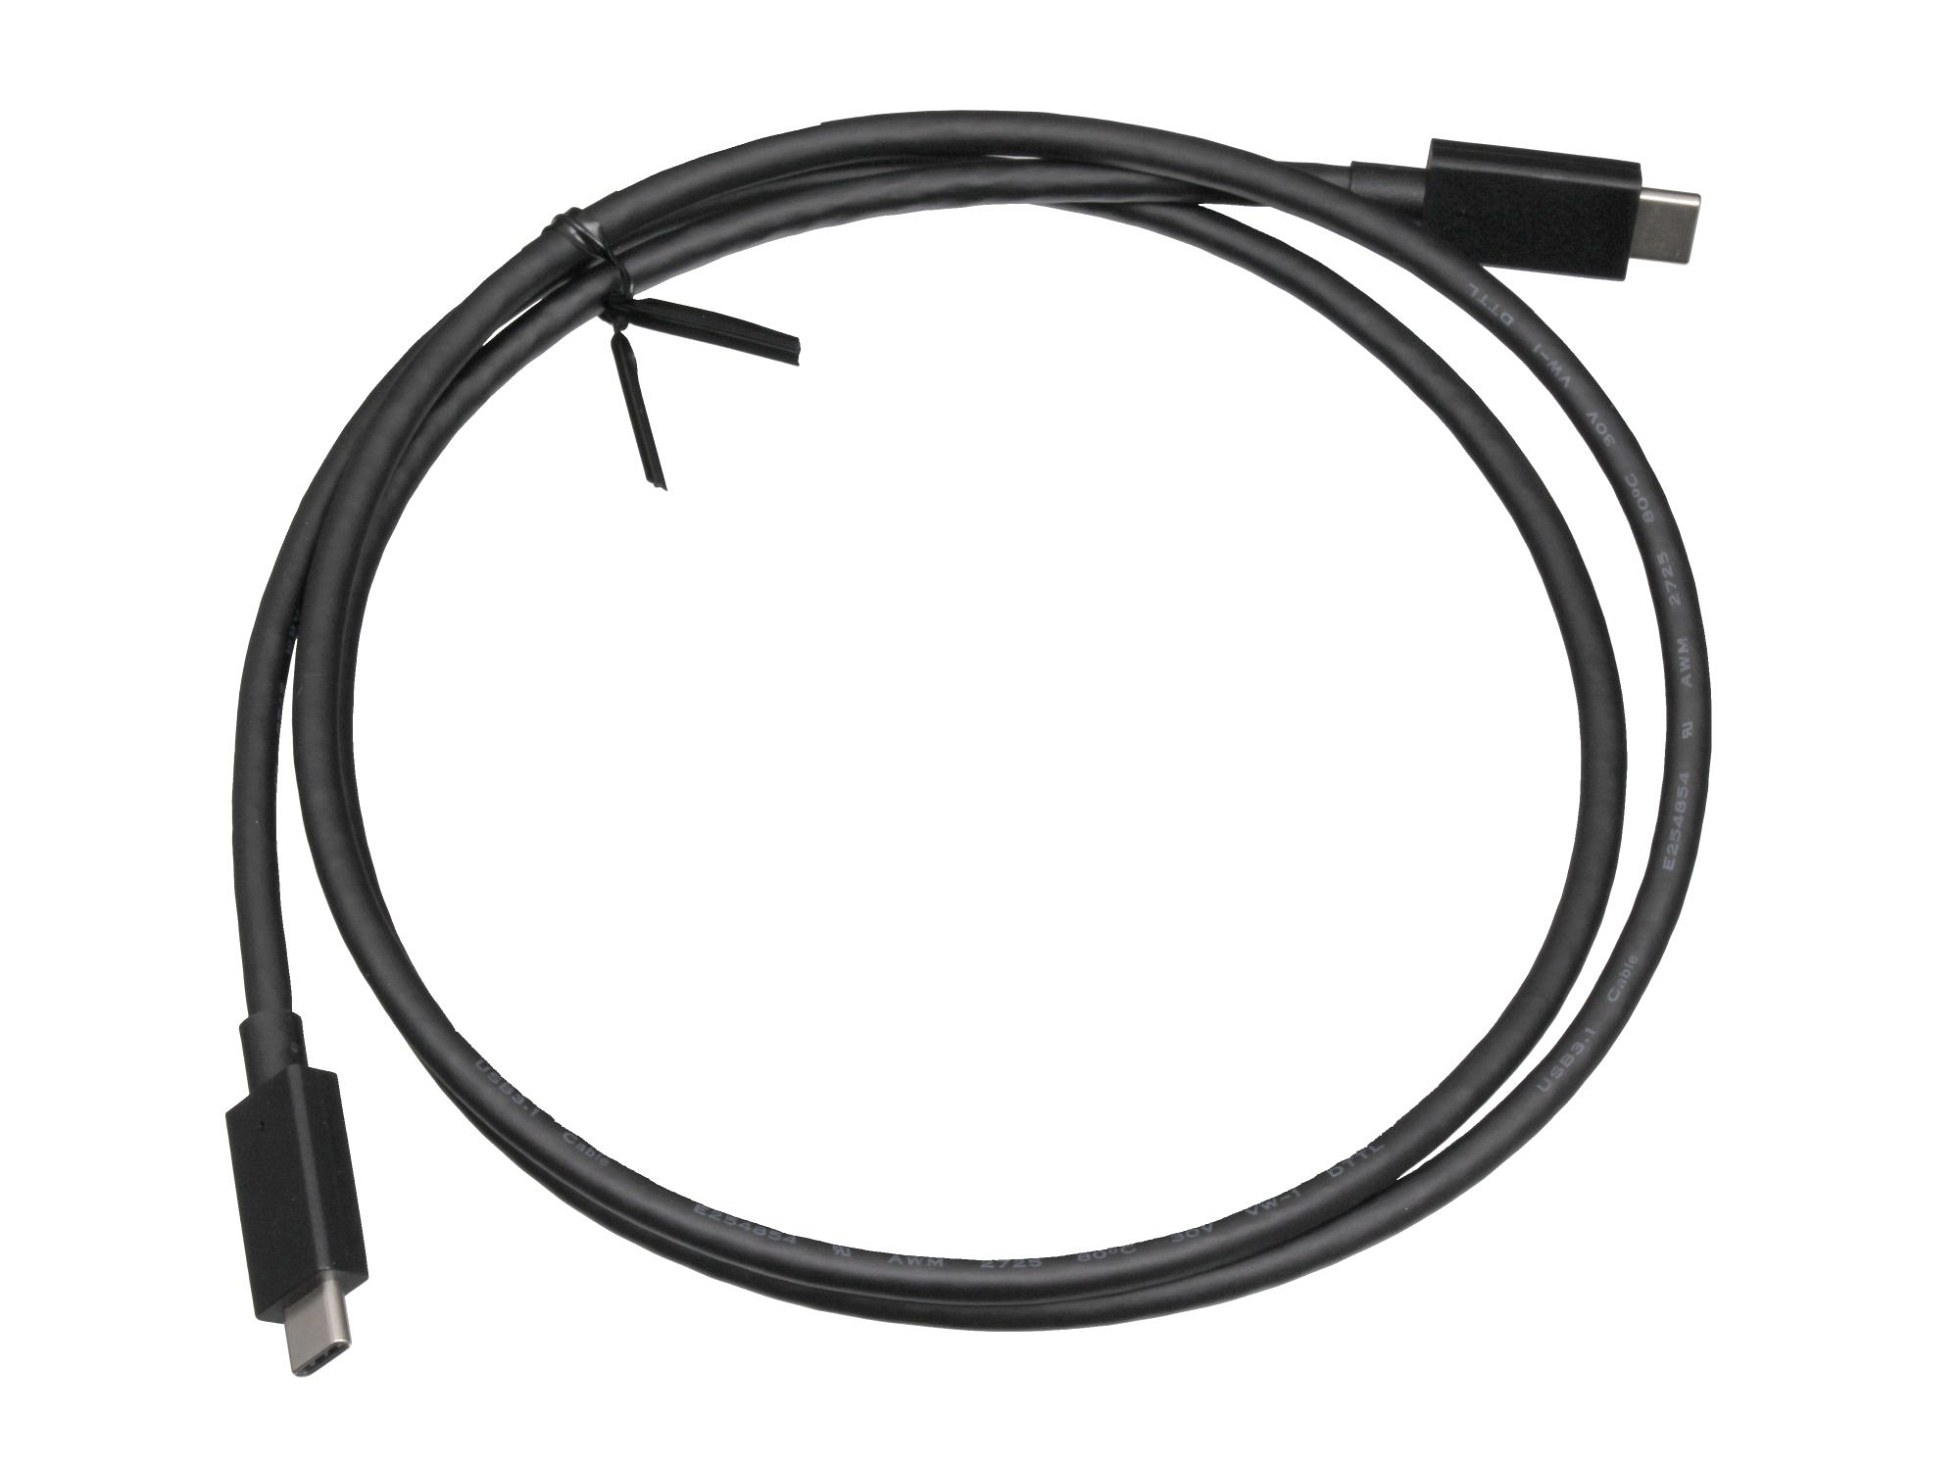 Asus 14011-02511000 USB-C Daten- / Ladekabel schwarz 1,10m 3.1